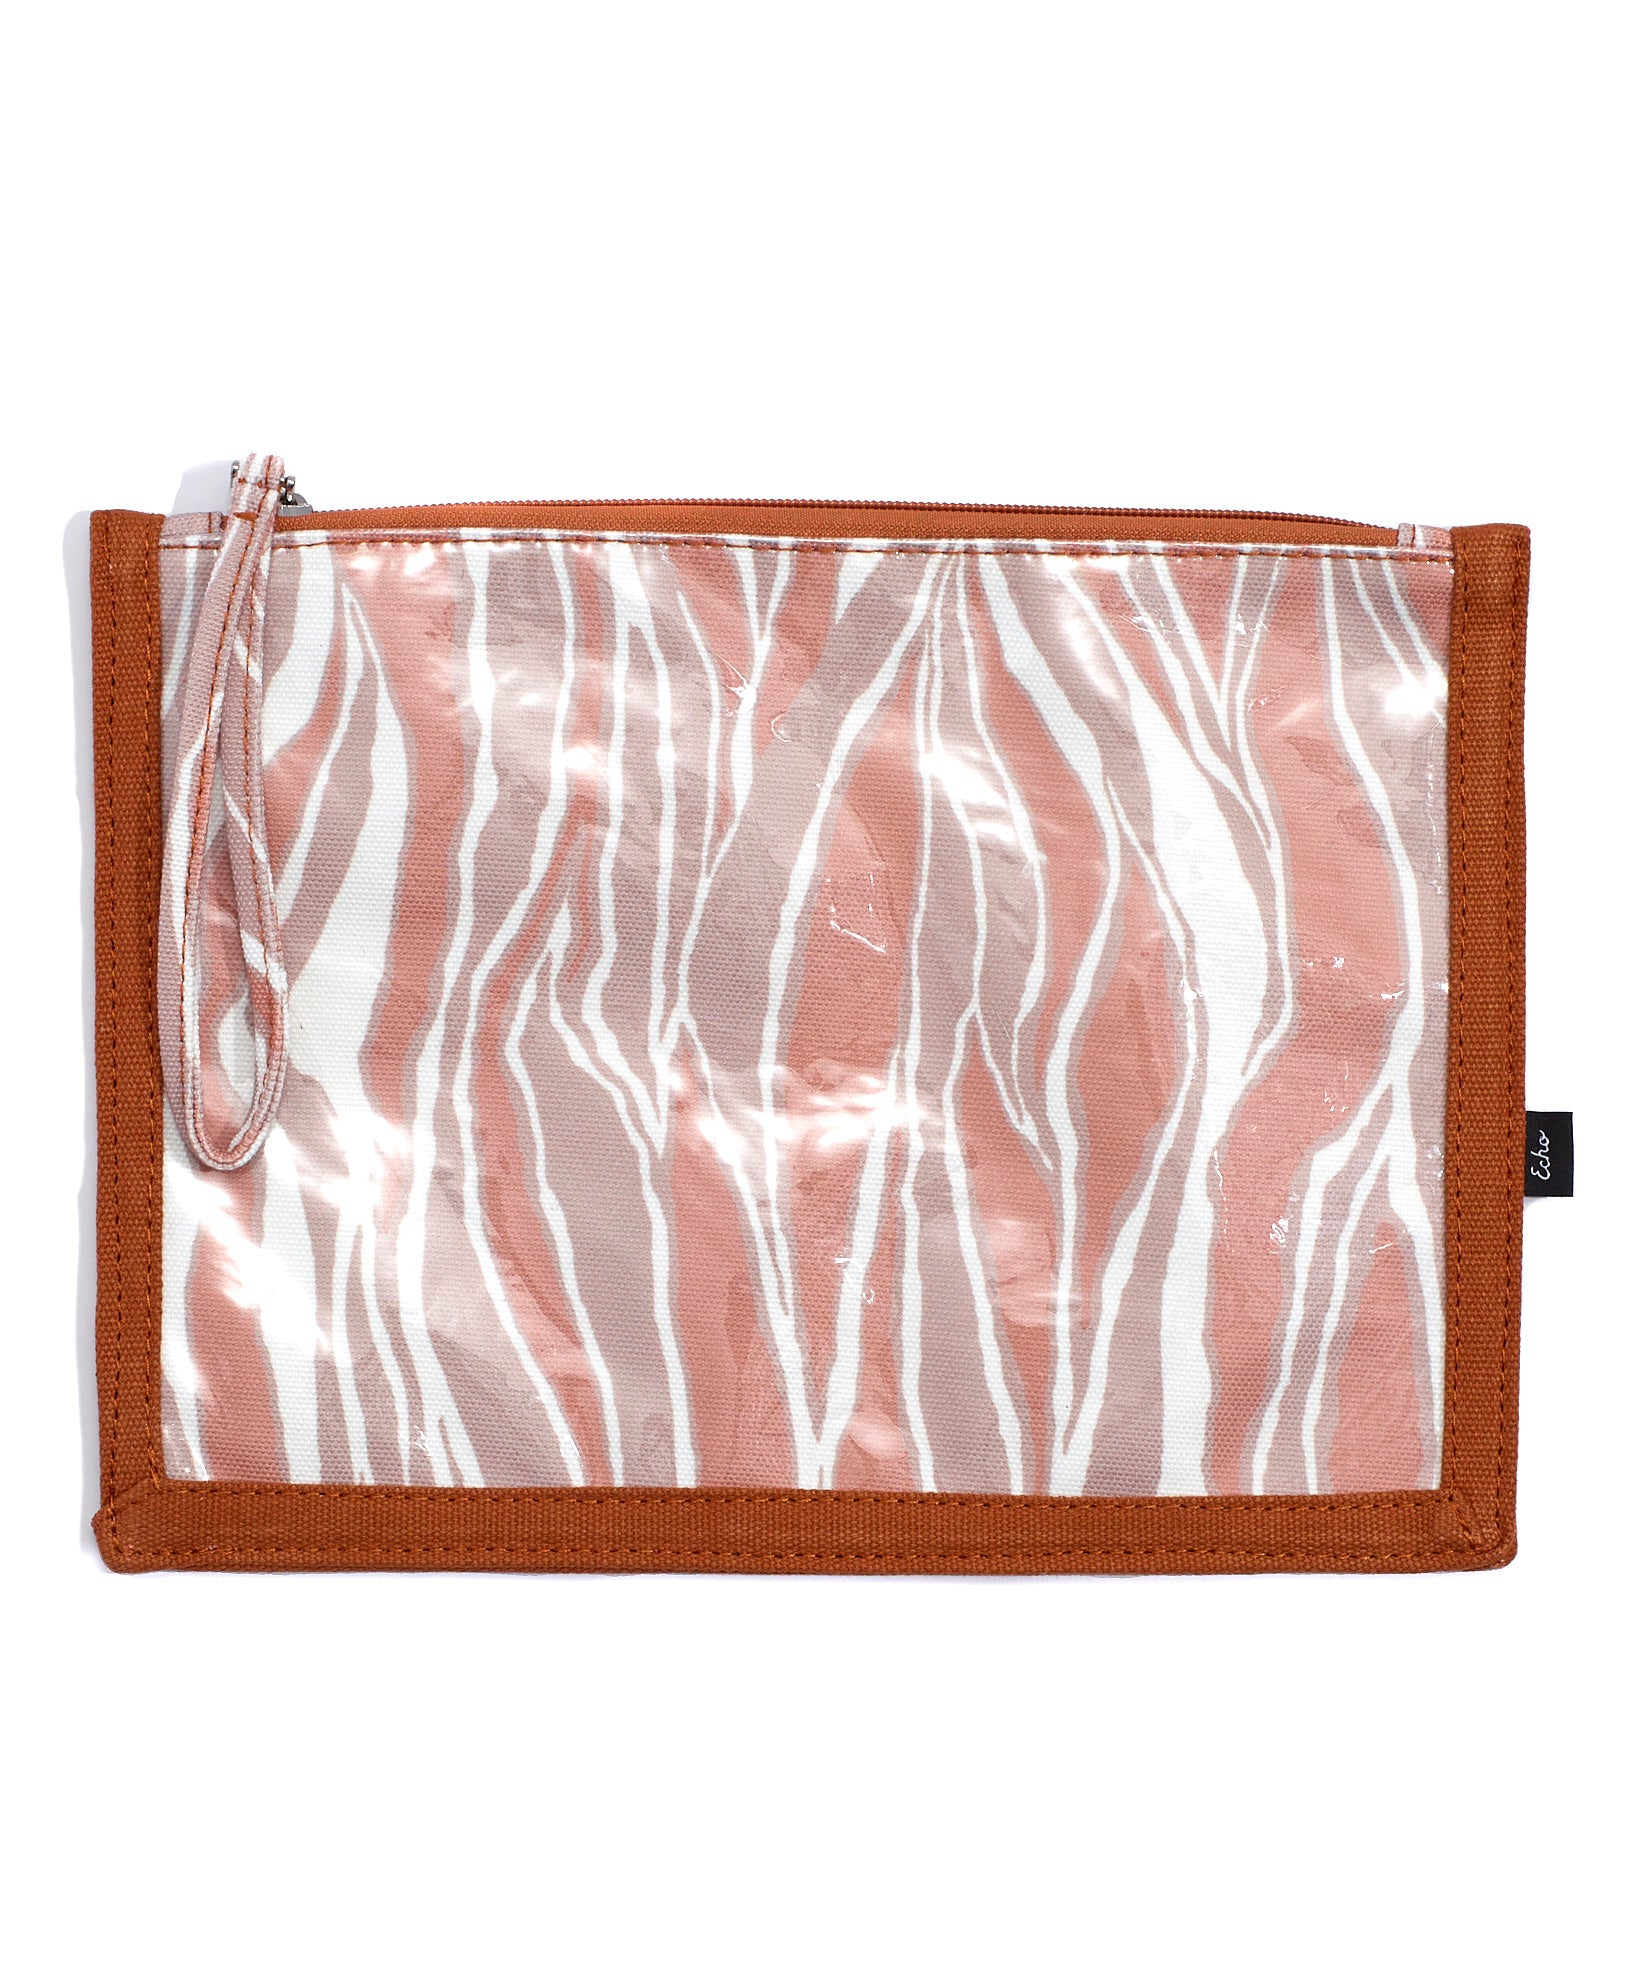 Zebra Bikini Bag in color Copper Zebra